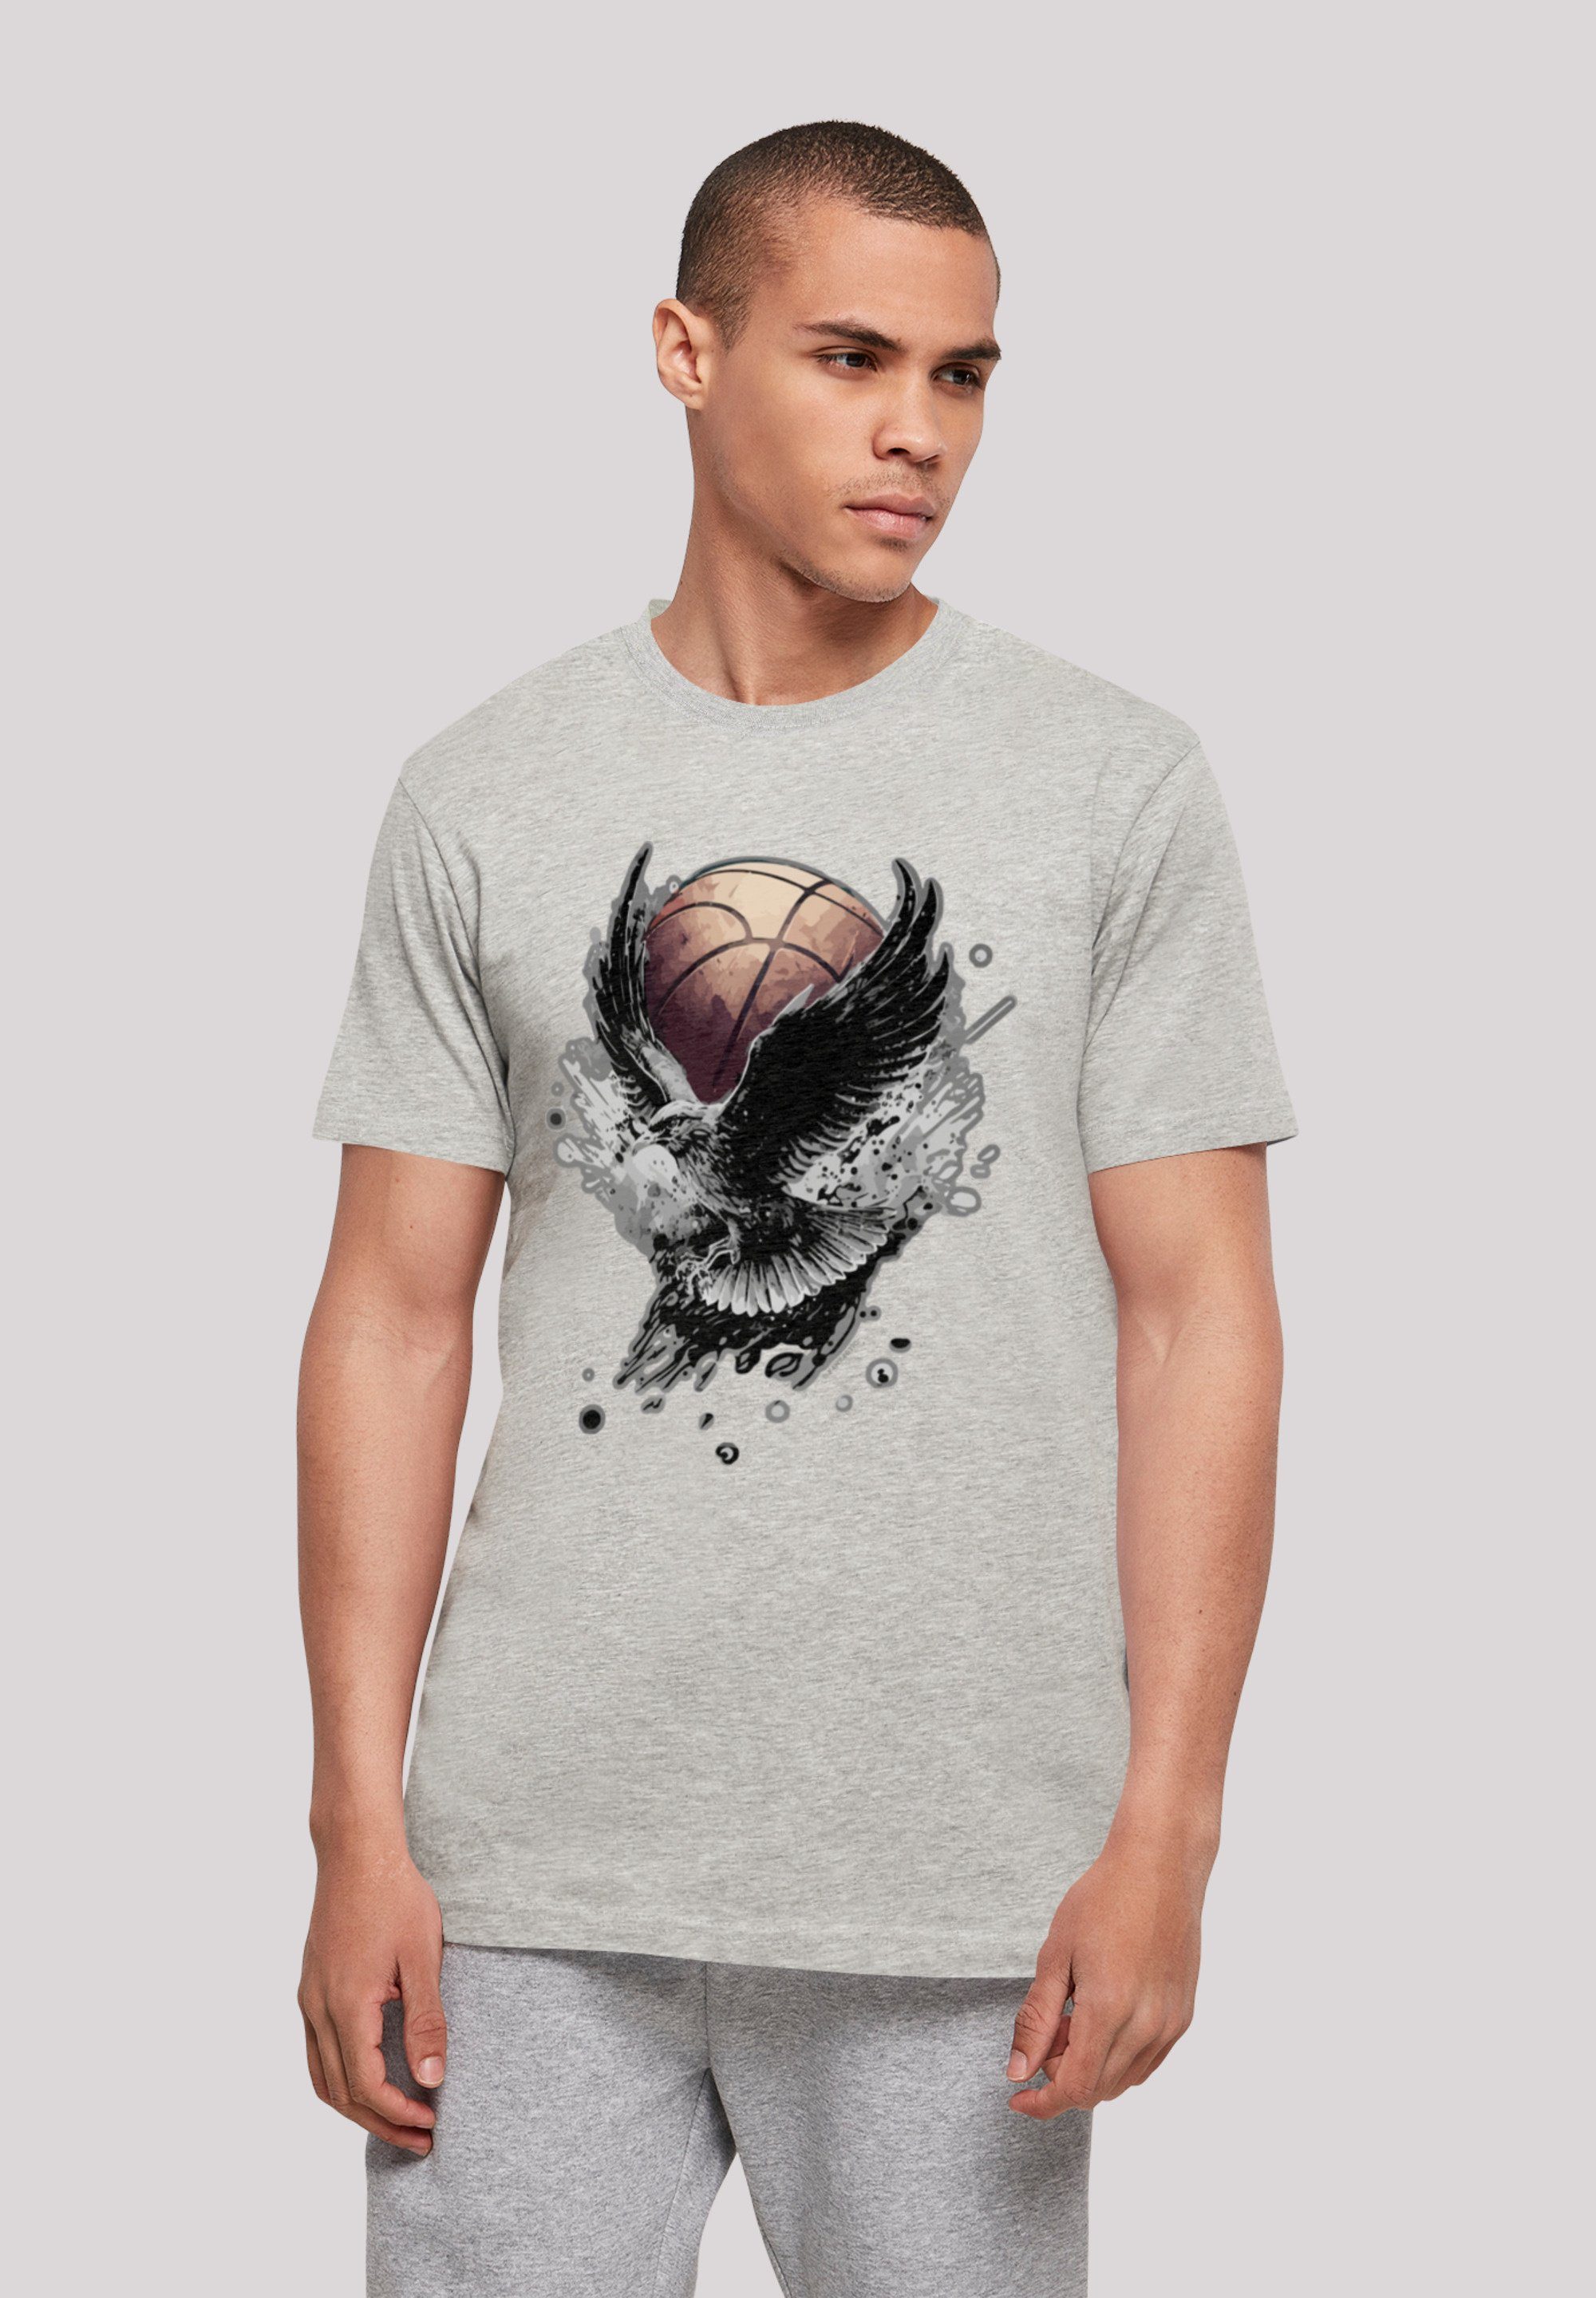 Print, Basketball F4NT4STIC weicher Baumwollstoff Adler hohem Sehr T-Shirt Tragekomfort mit